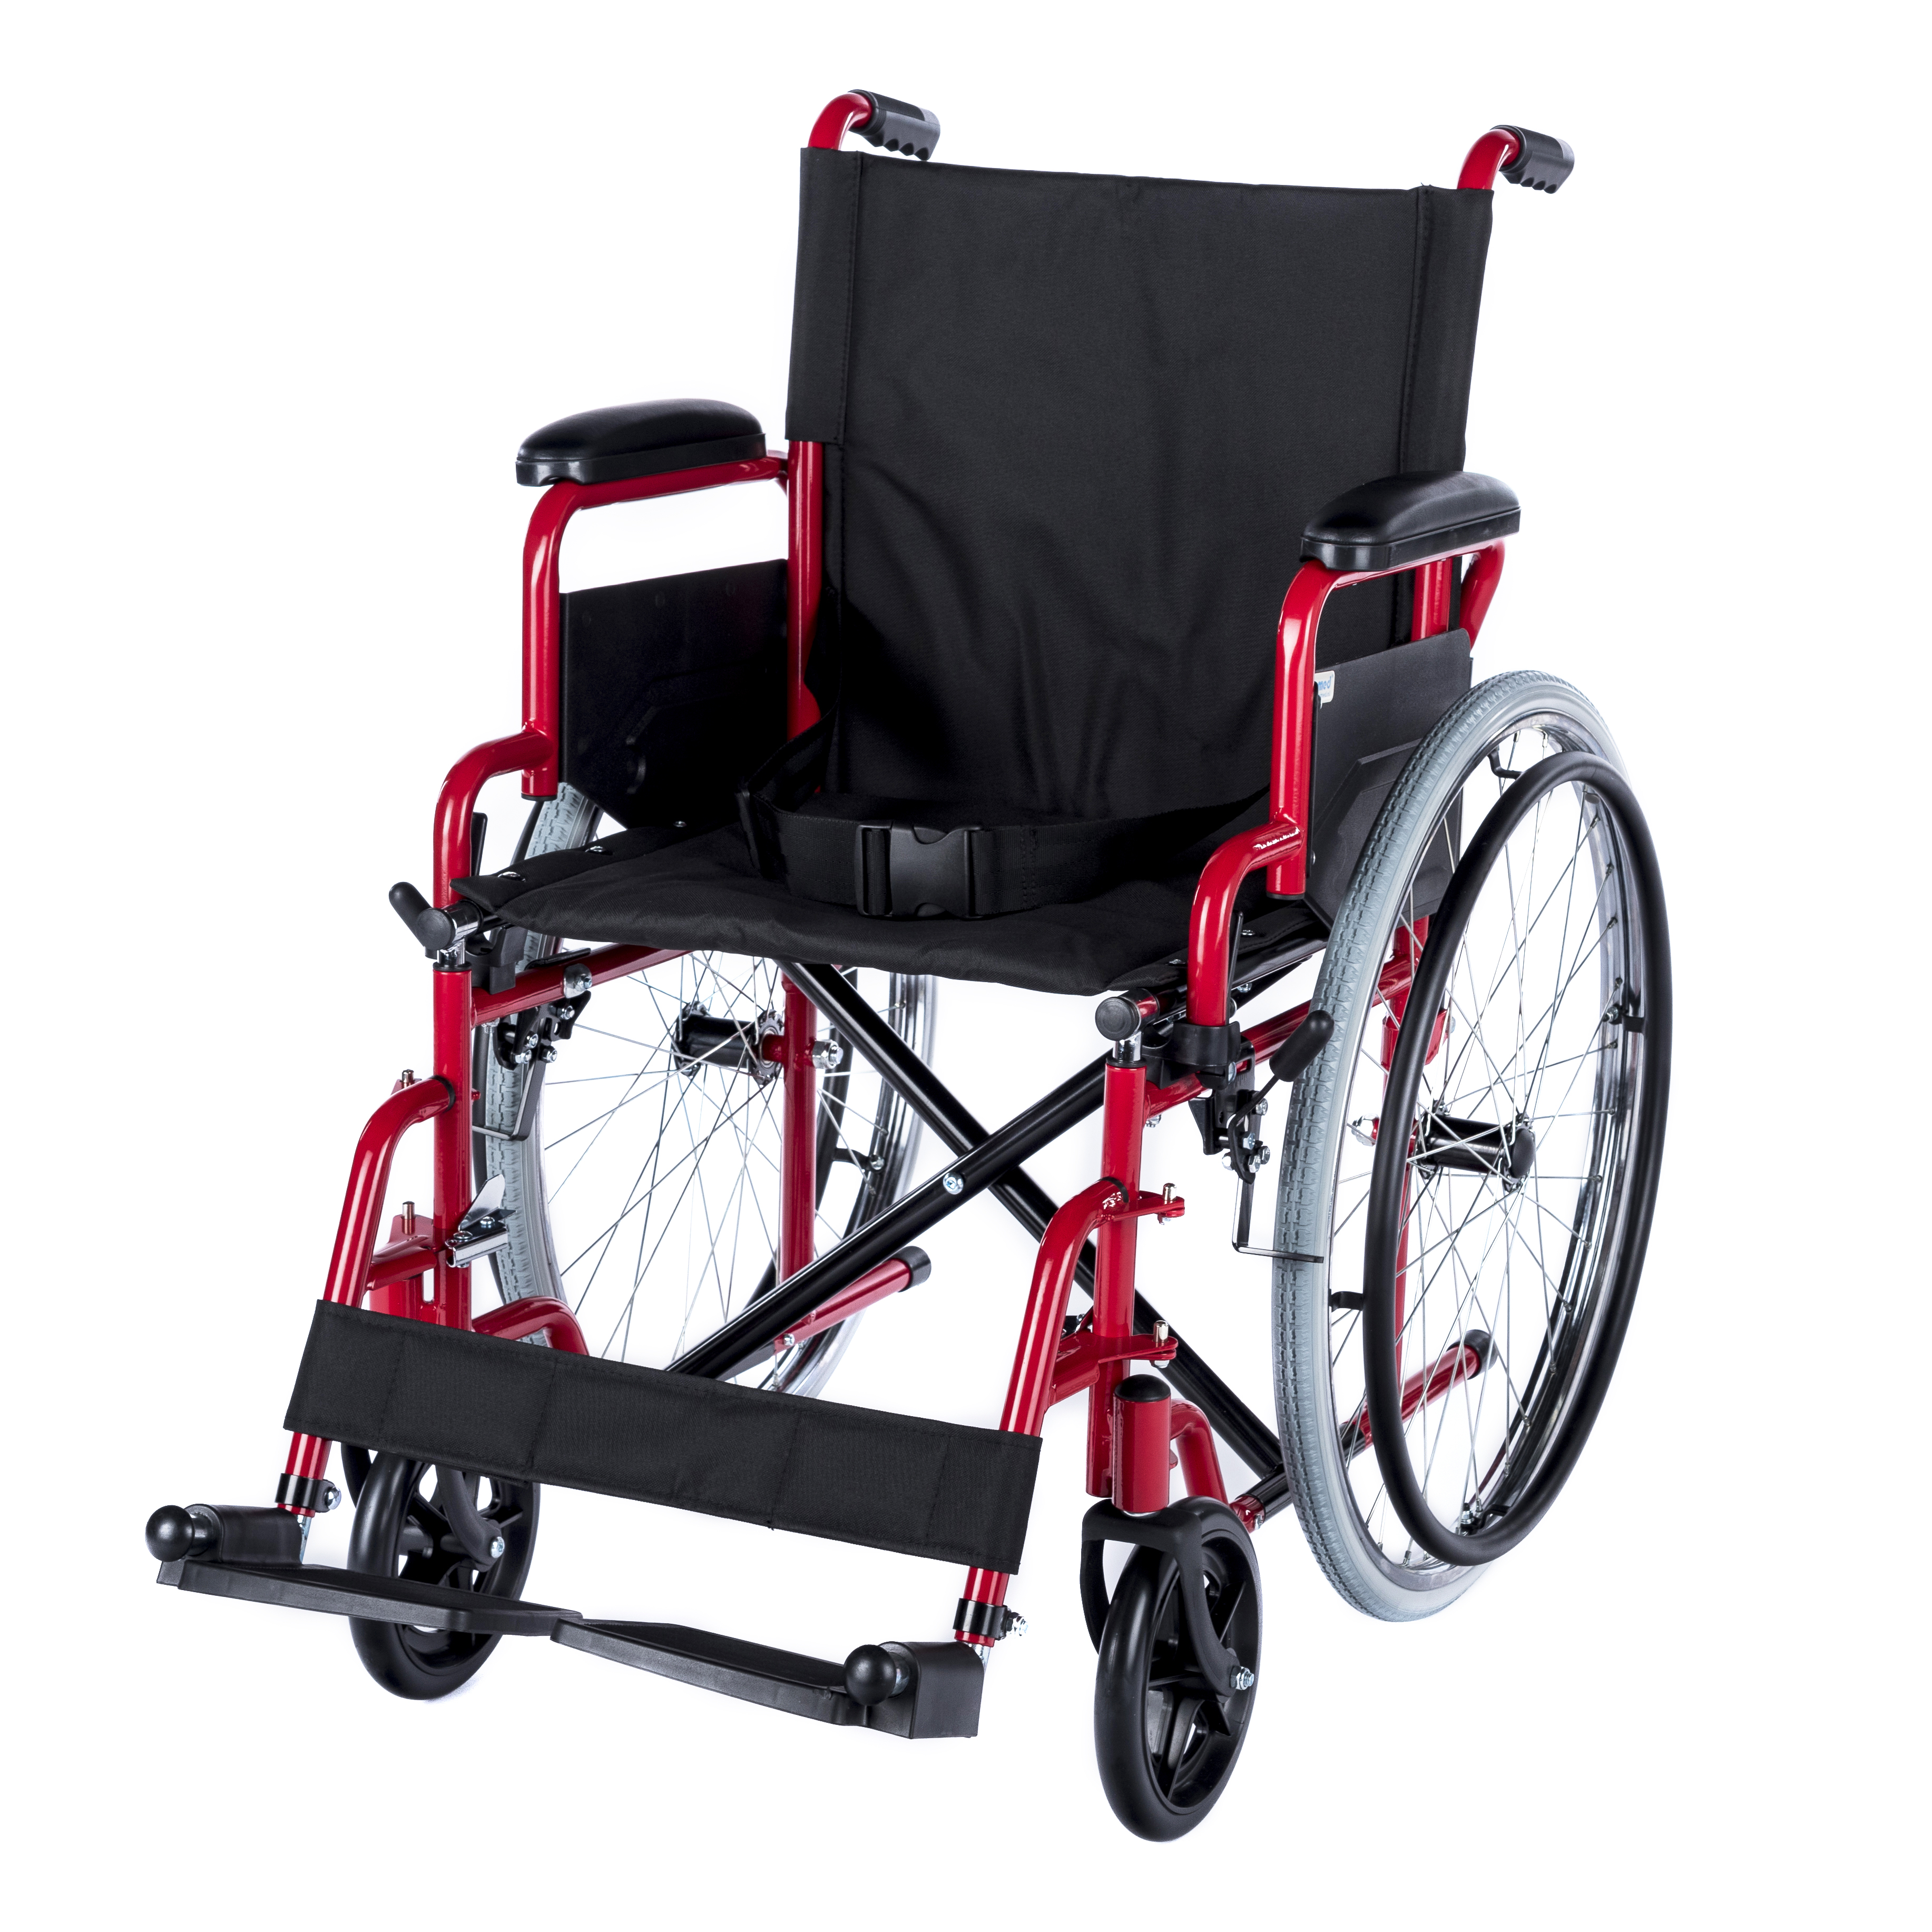 WHE-01-RED Sedia a rotelle manuale pieghevole, rossa, con bracciolo ribaltabile e poggiapiedi ribaltabile, per pezzo per collo.